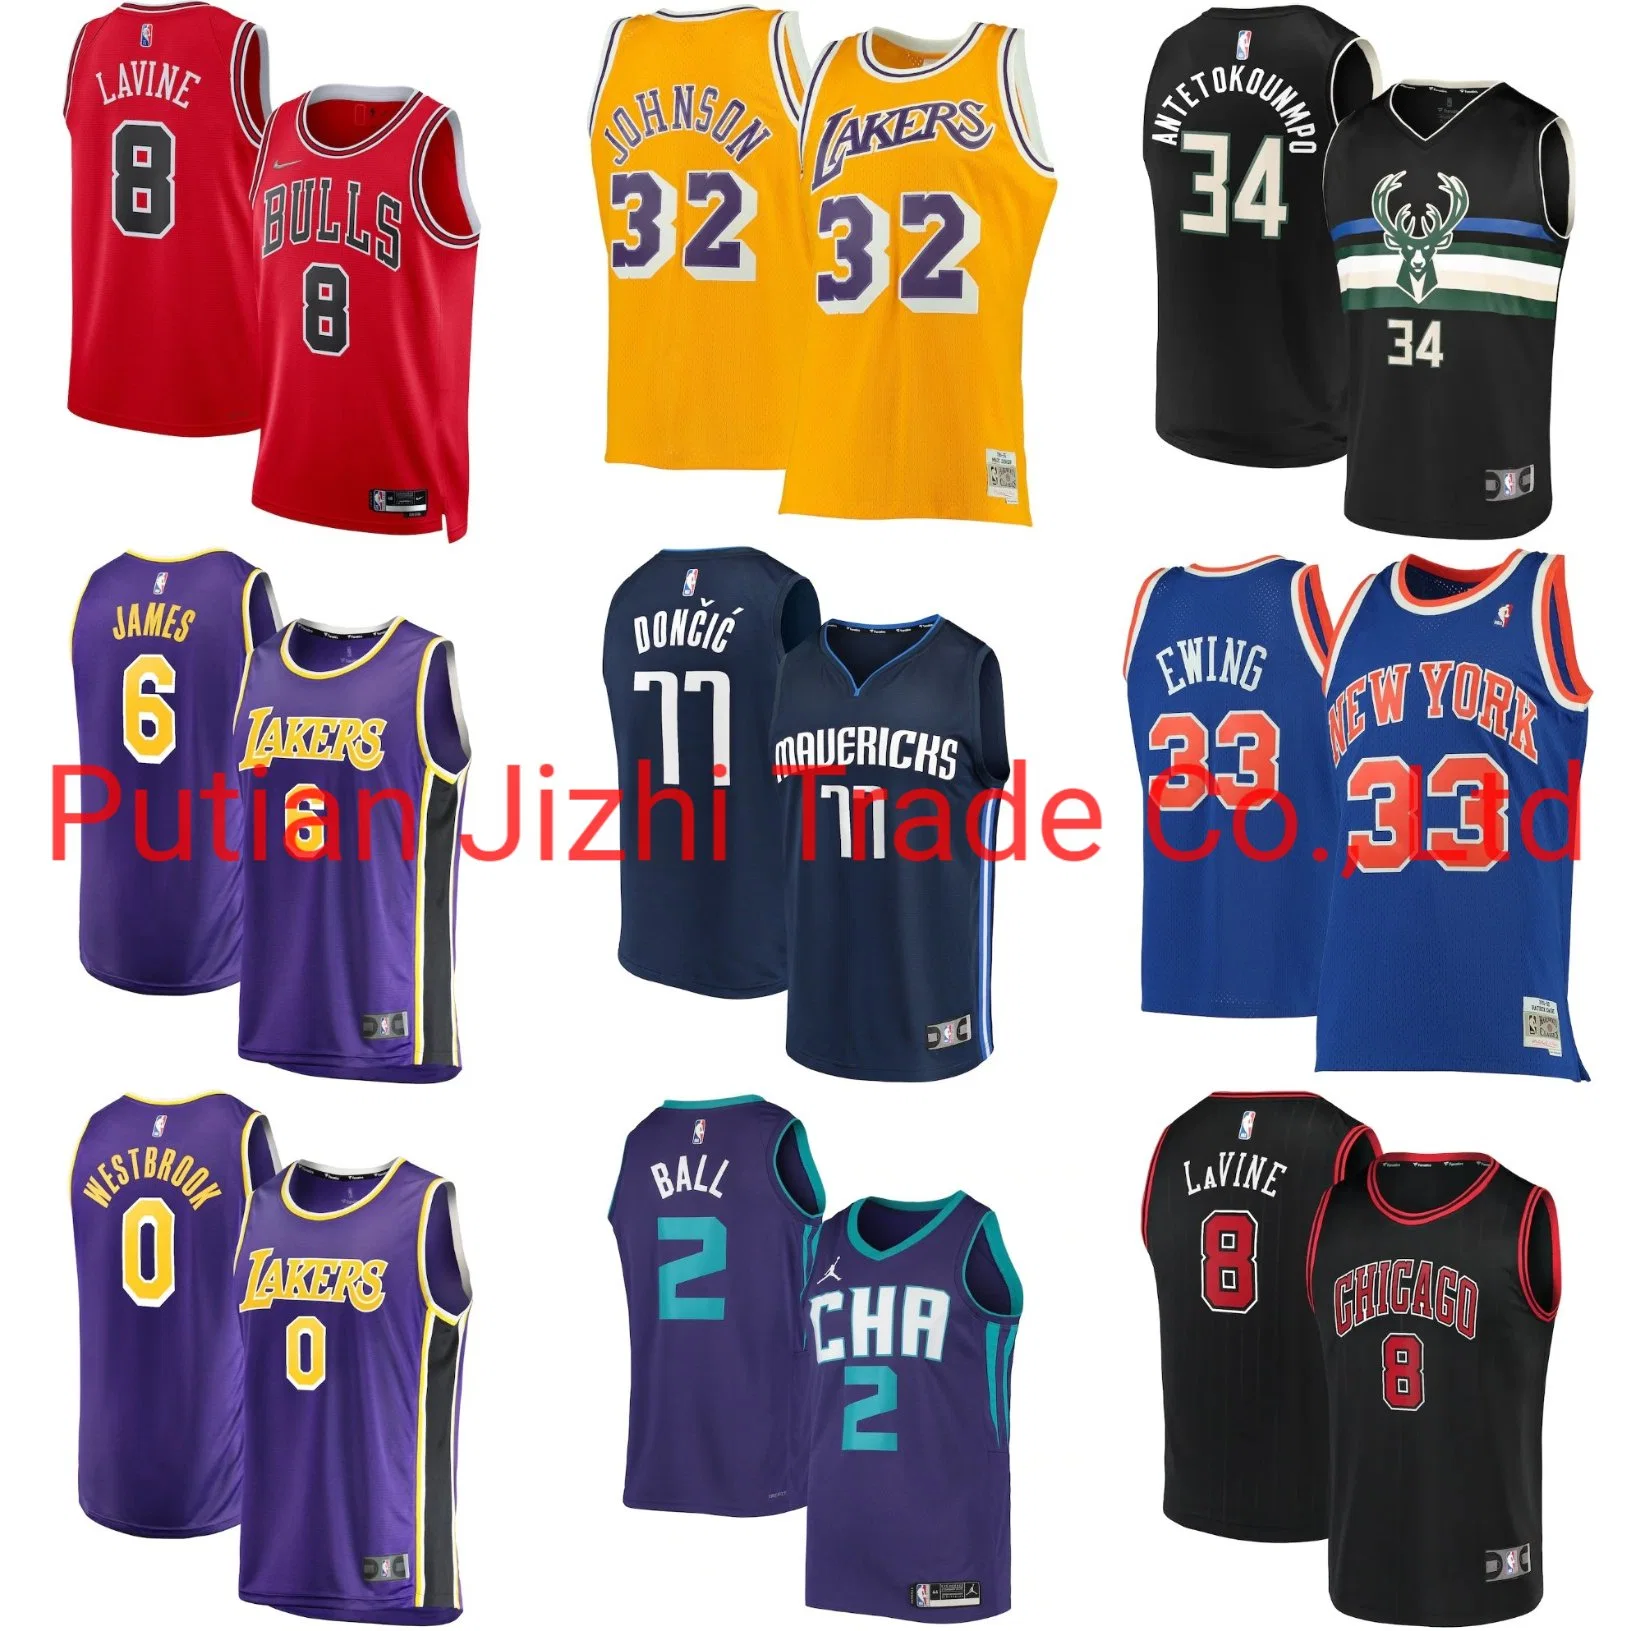 Comercio al por mayor de madera barata clásicos Chicago Bulls La Lakers Bucks Swingman camisetas de baloncesto